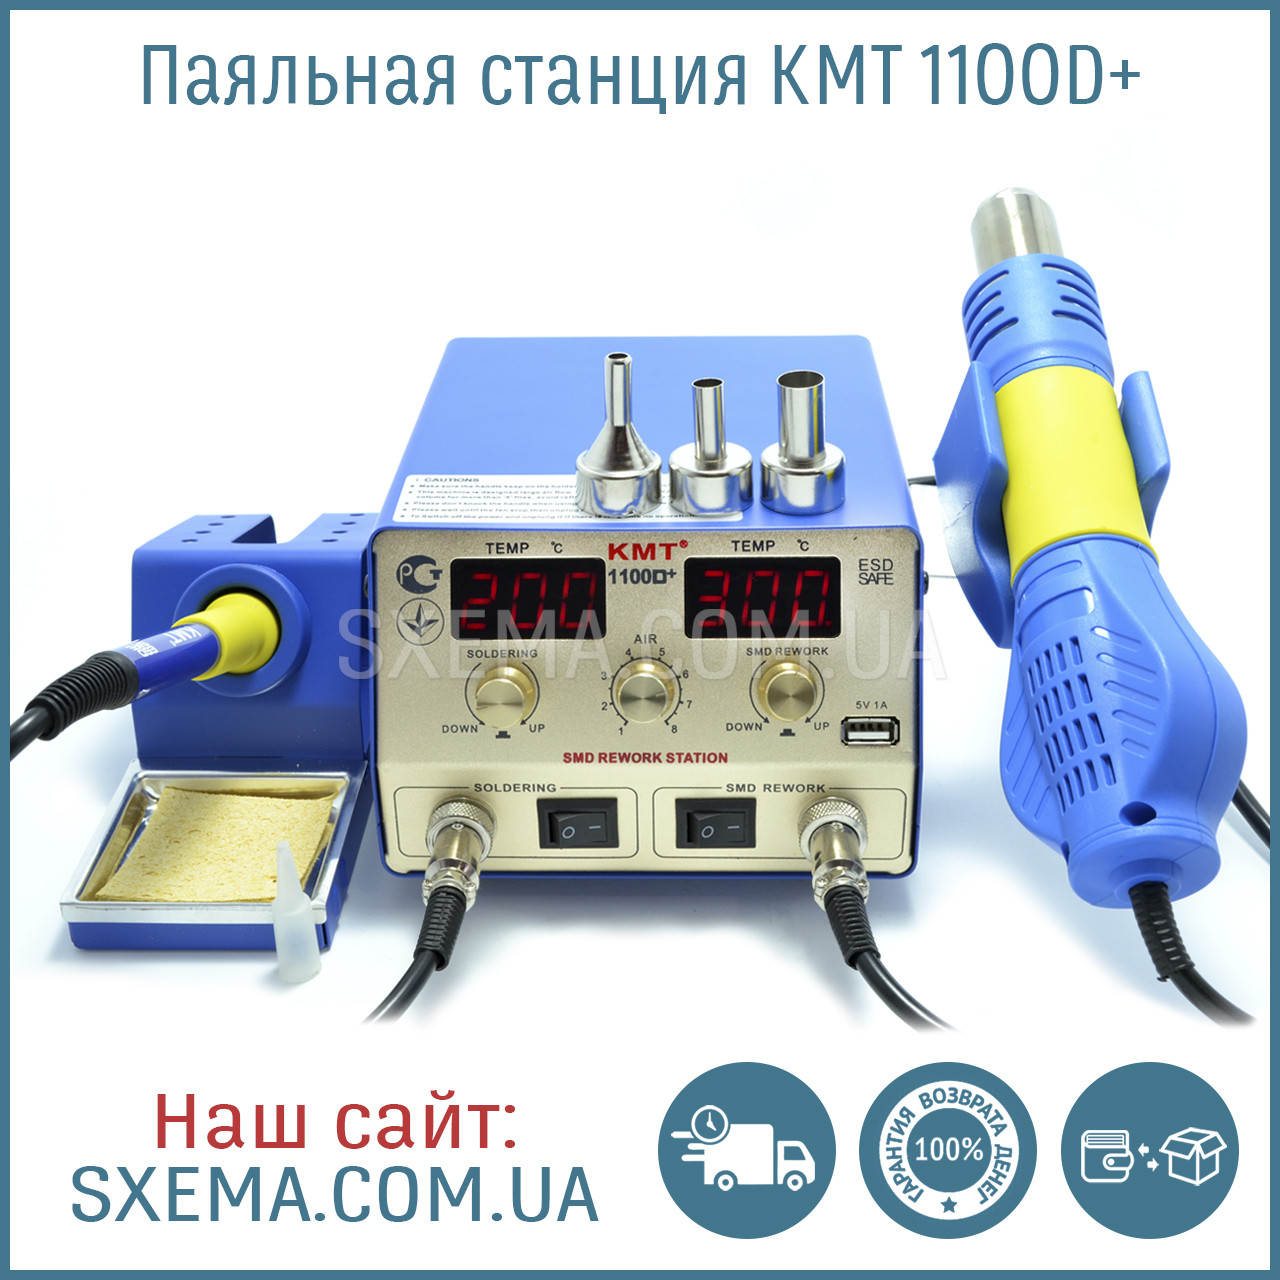 Паяльна станція KMT 1100D+ фен + паяльник, металевий корпус, зйомний фен, фото 1